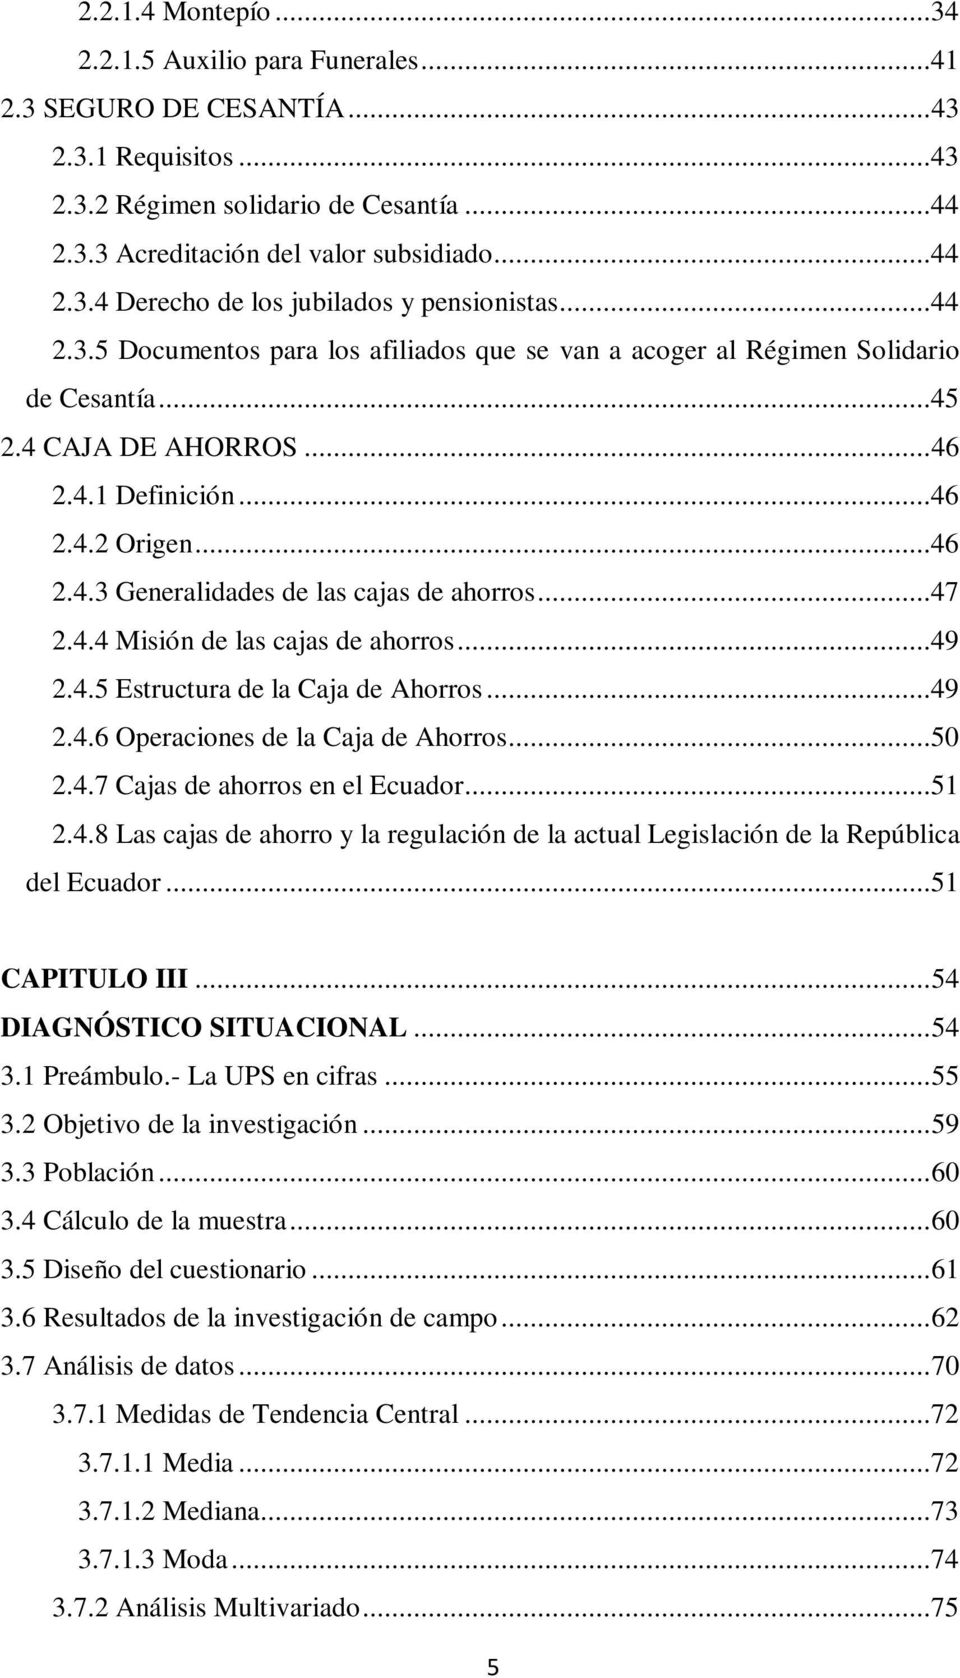 ..47 2.4.4 Misión de las cajas de ahorros...49 2.4.5 Estructura de la Caja de Ahorros...49 2.4.6 Operaciones de la Caja de Ahorros...50 2.4.7 Cajas de ahorros en el Ecuador...51 2.4.8 Las cajas de ahorro y la regulación de la actual Legislación de la República del Ecuador.